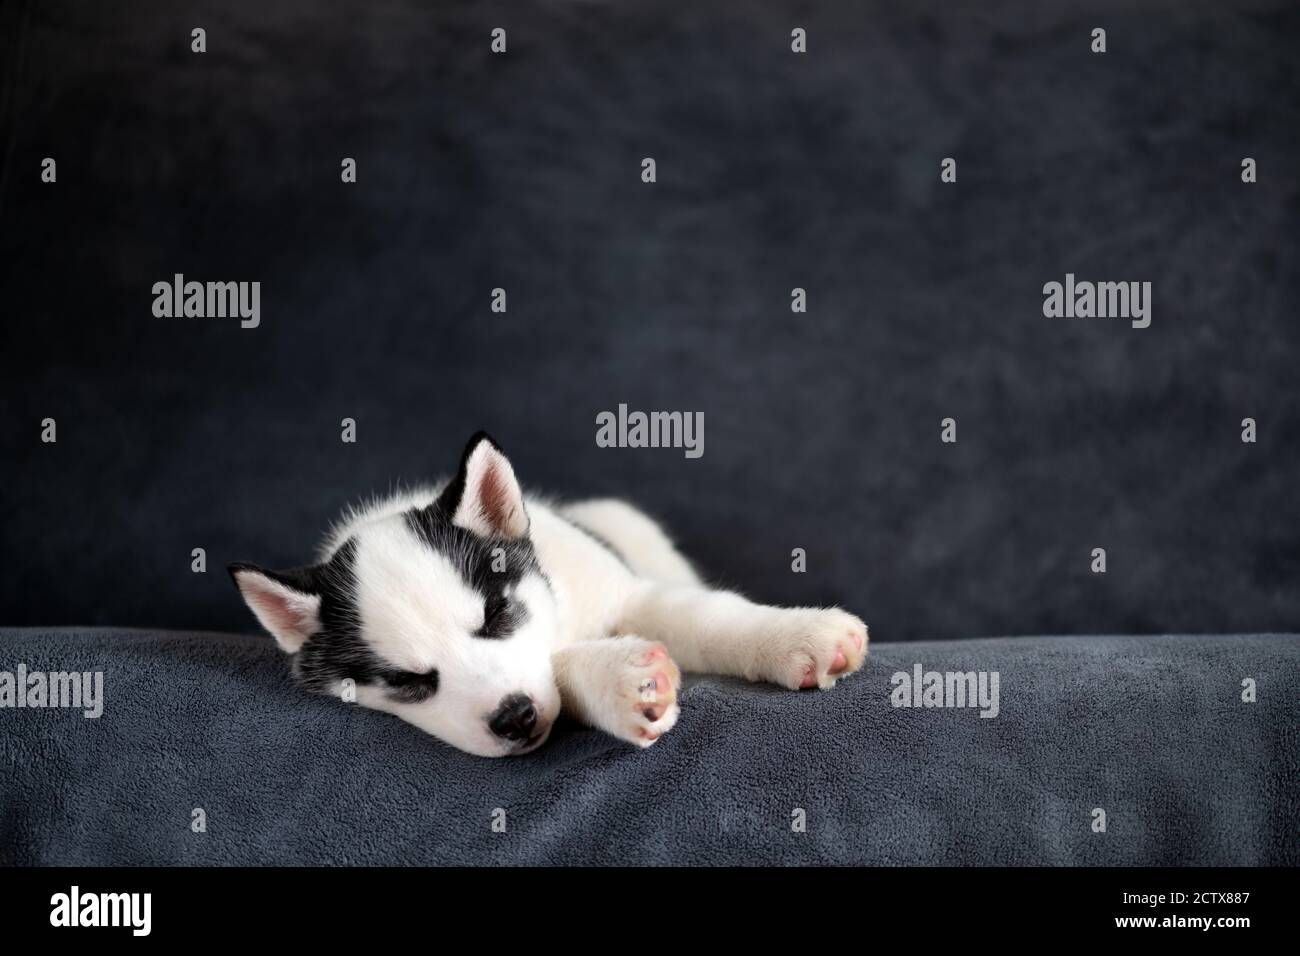 Ein kleiner weißer Hund Welpe Rasse sibirischen Husky mit schönen blauen Augen schlafen auf grauem Teppich. Hunde und Tierfotografie Stockfoto